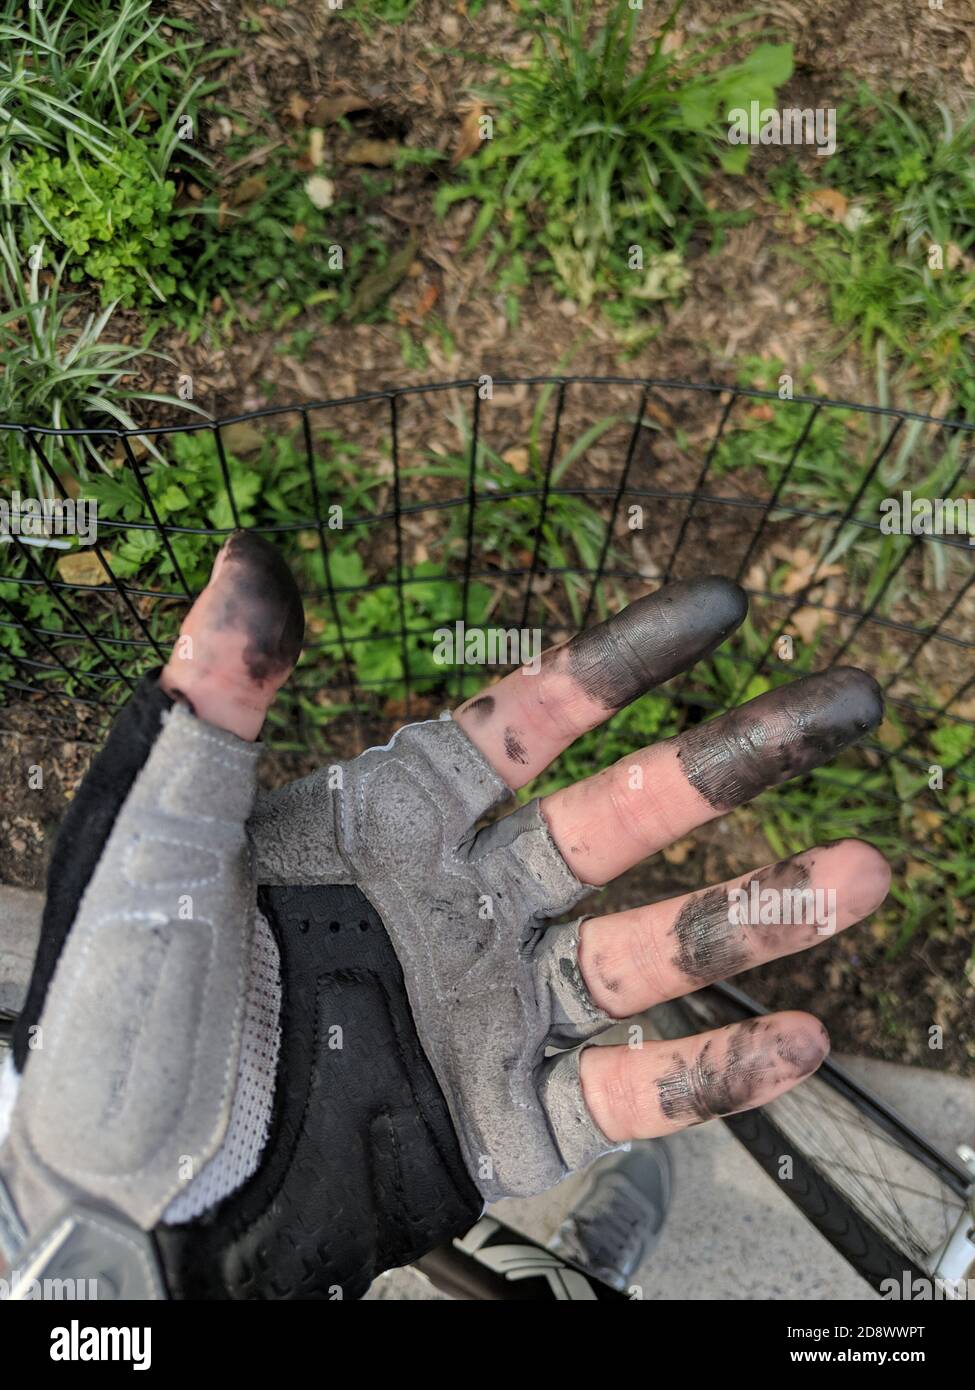 Hombre con guantes de jardinería y mono arrodillado en un jardín atendiendo  a las plantas